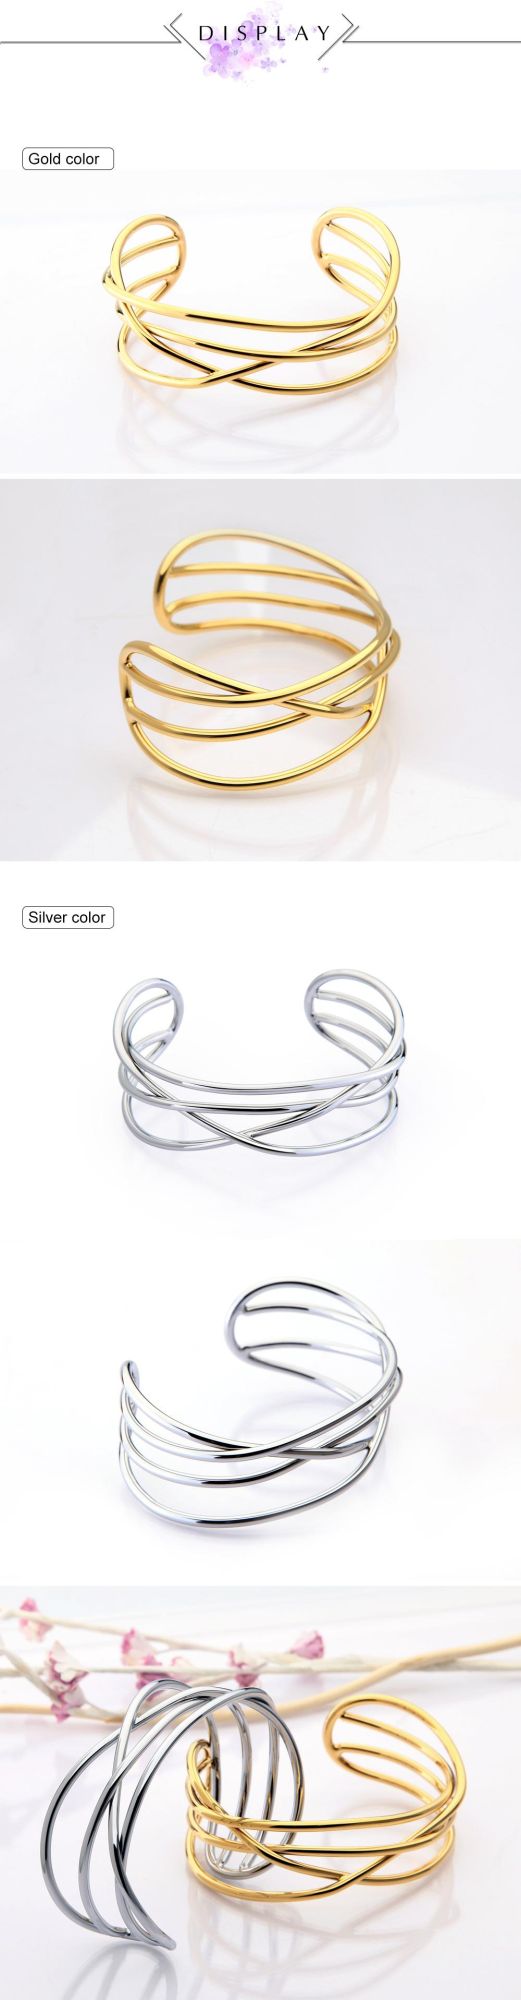 Shopping and Party Use 100%Copper Bracelets Light Luxury Bracelet